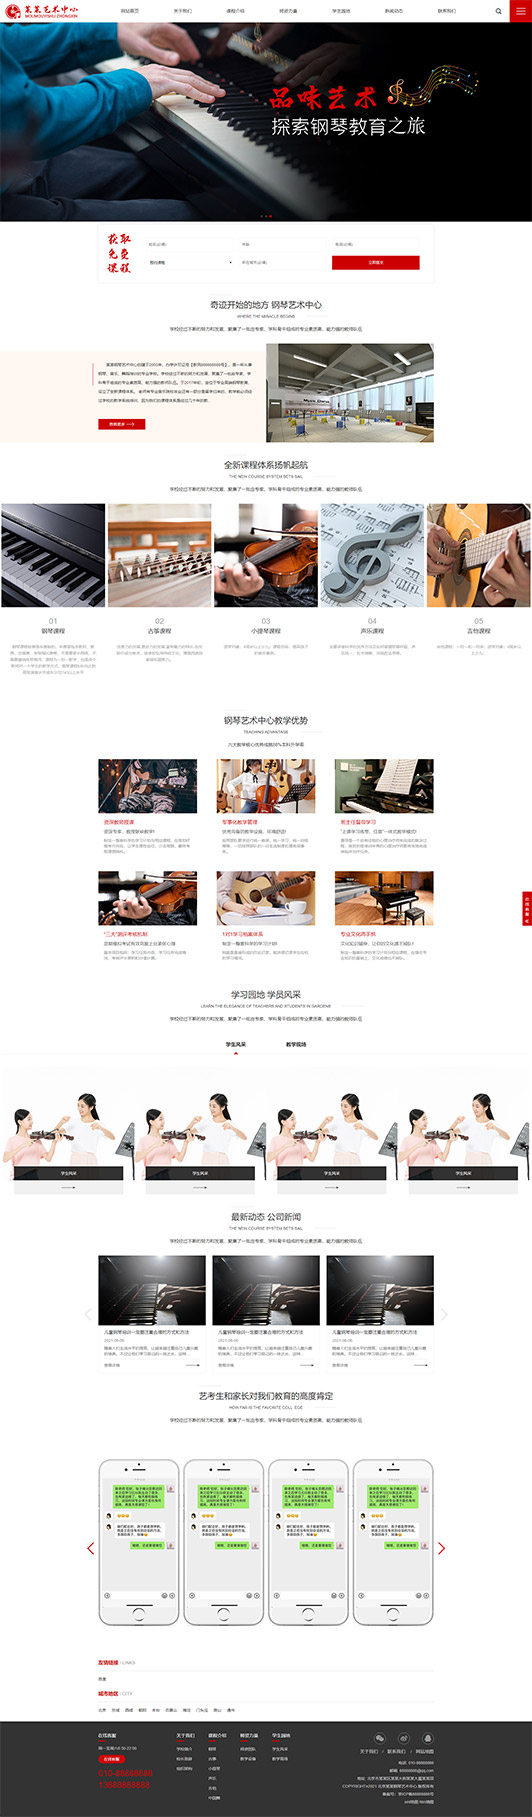 咸宁钢琴艺术培训公司响应式企业网站